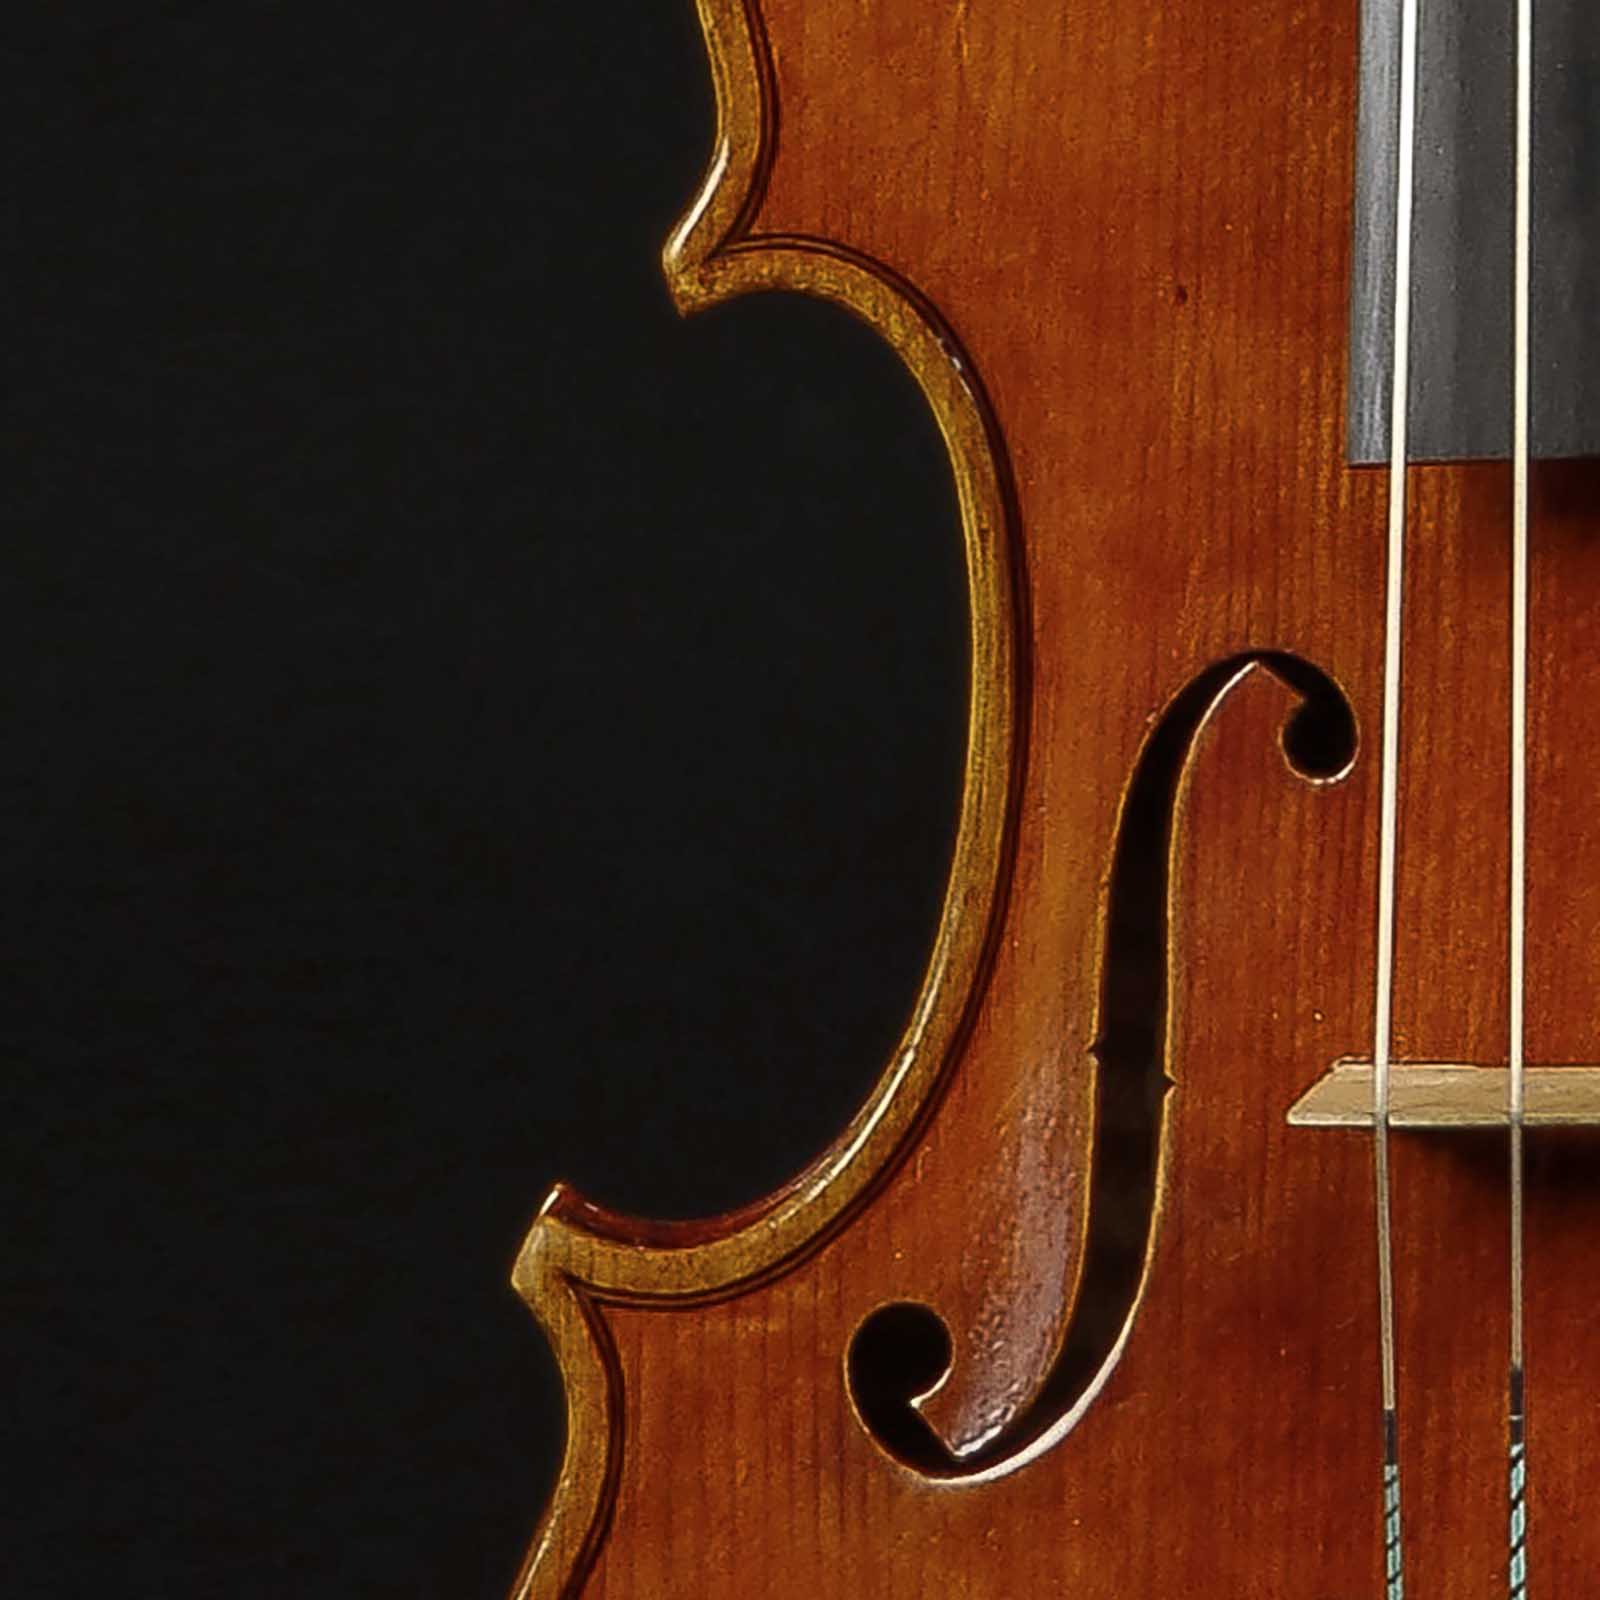 Antonio Stradivari Cremona c.1700 “Teatro Ponchielli“ - Image 4